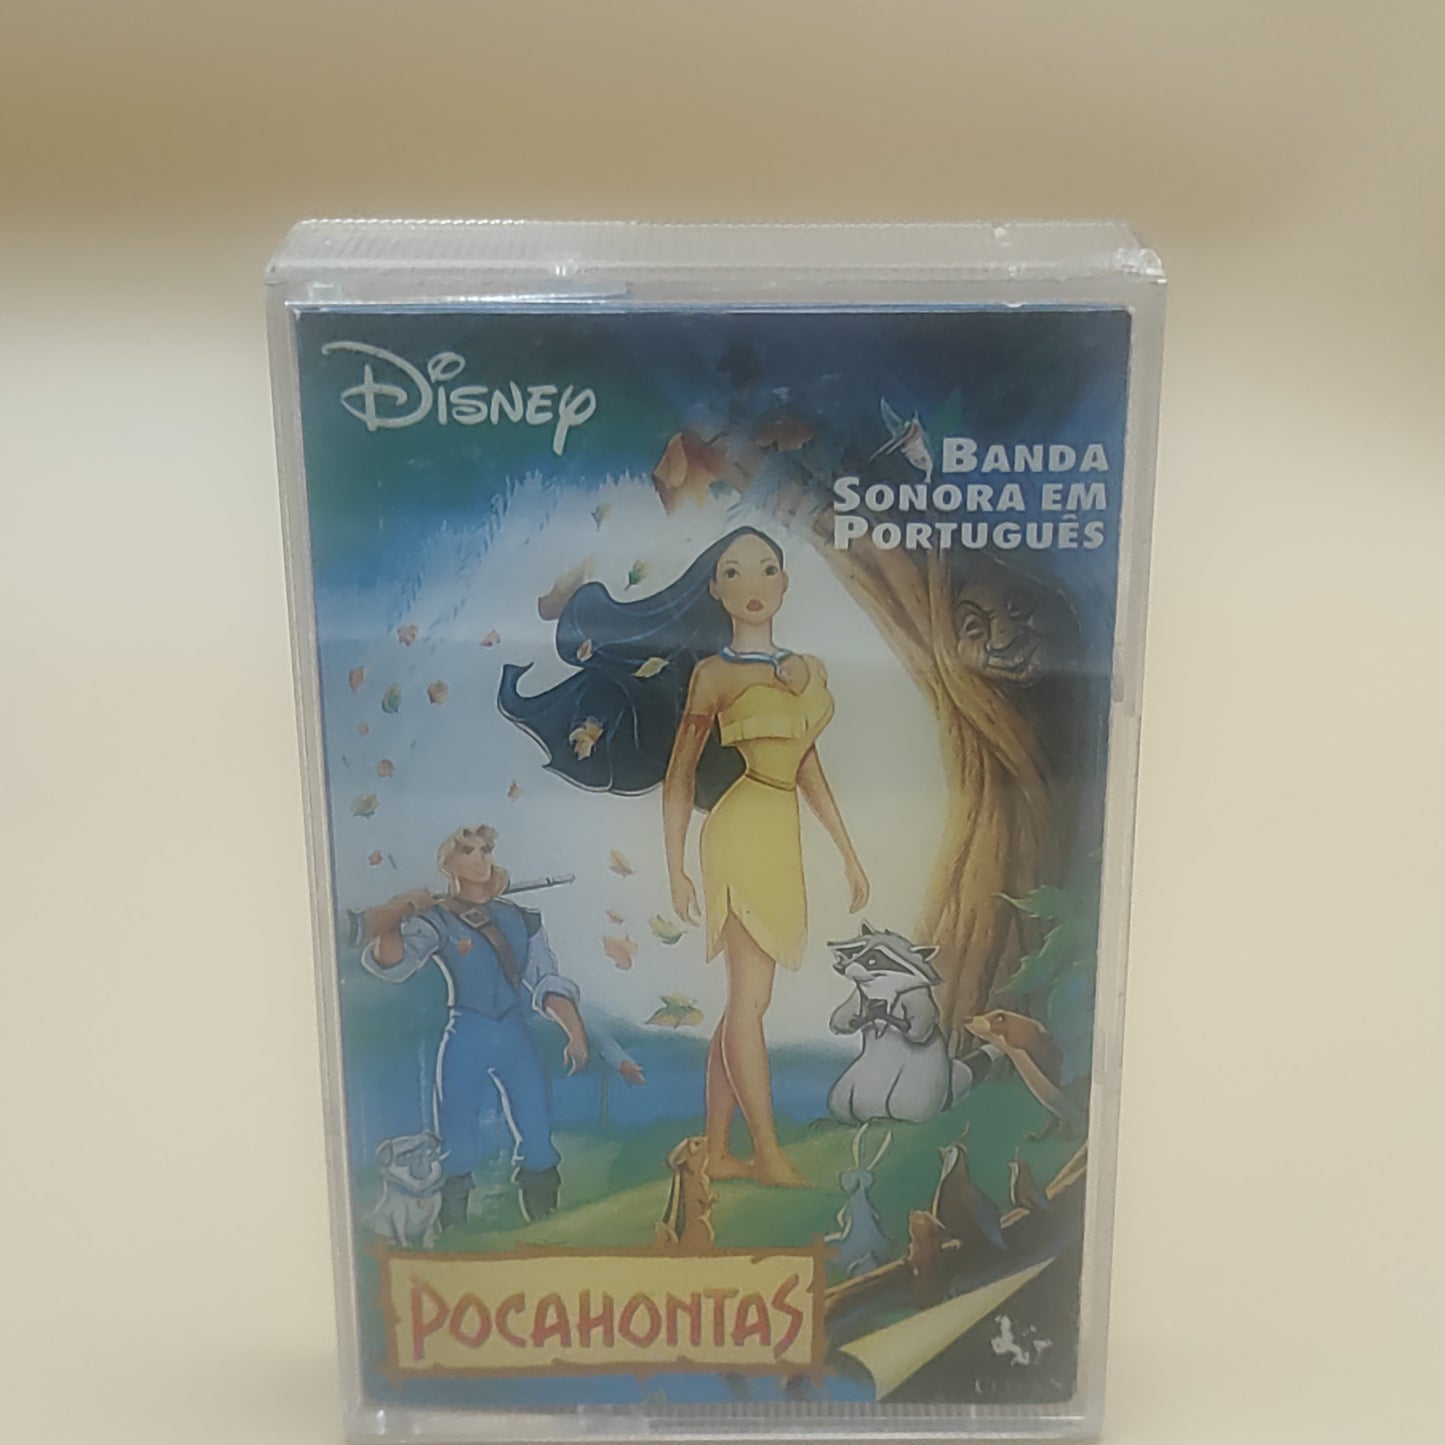 Pocahontas - Waltdisney (Banda Sonora Em Português)